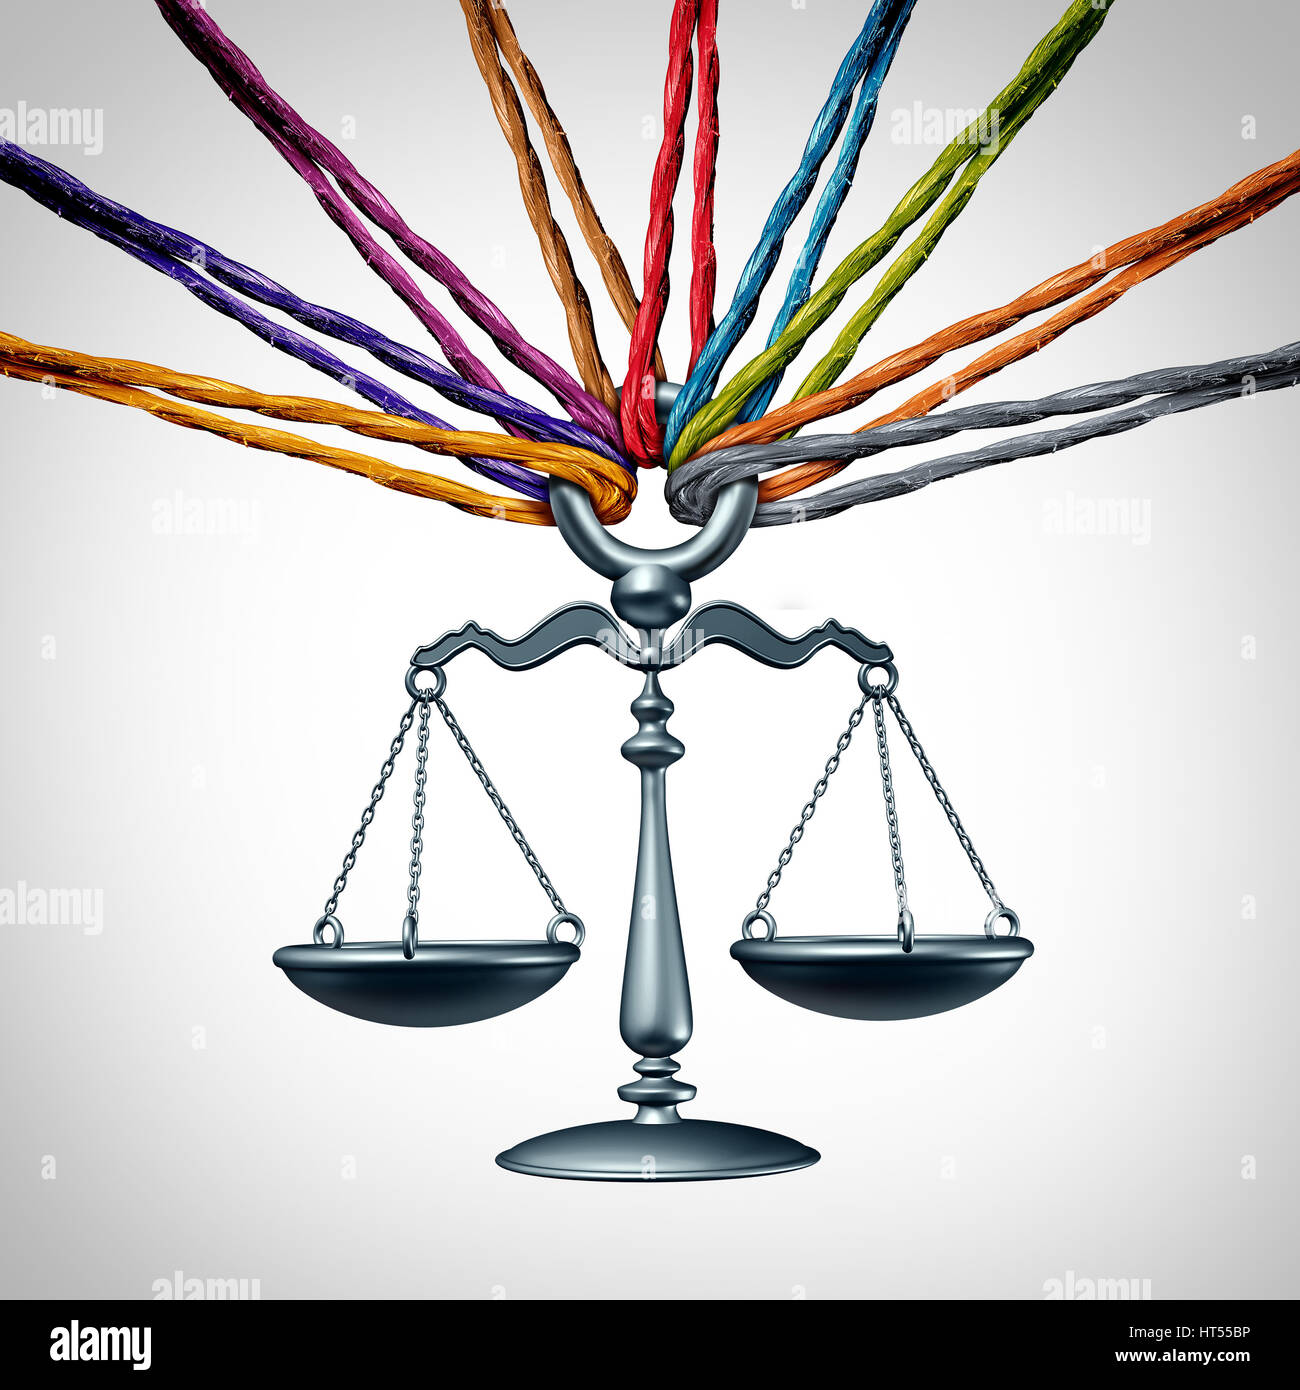 Gemeinschaft Gesetz oder Sammelklage Klage und Rechtshilfe-Konzept als eine Gruppe von vielfältigen Seile Vertretung sozialen Gerechtigkeit und Zusammenarbeit. Stockfoto